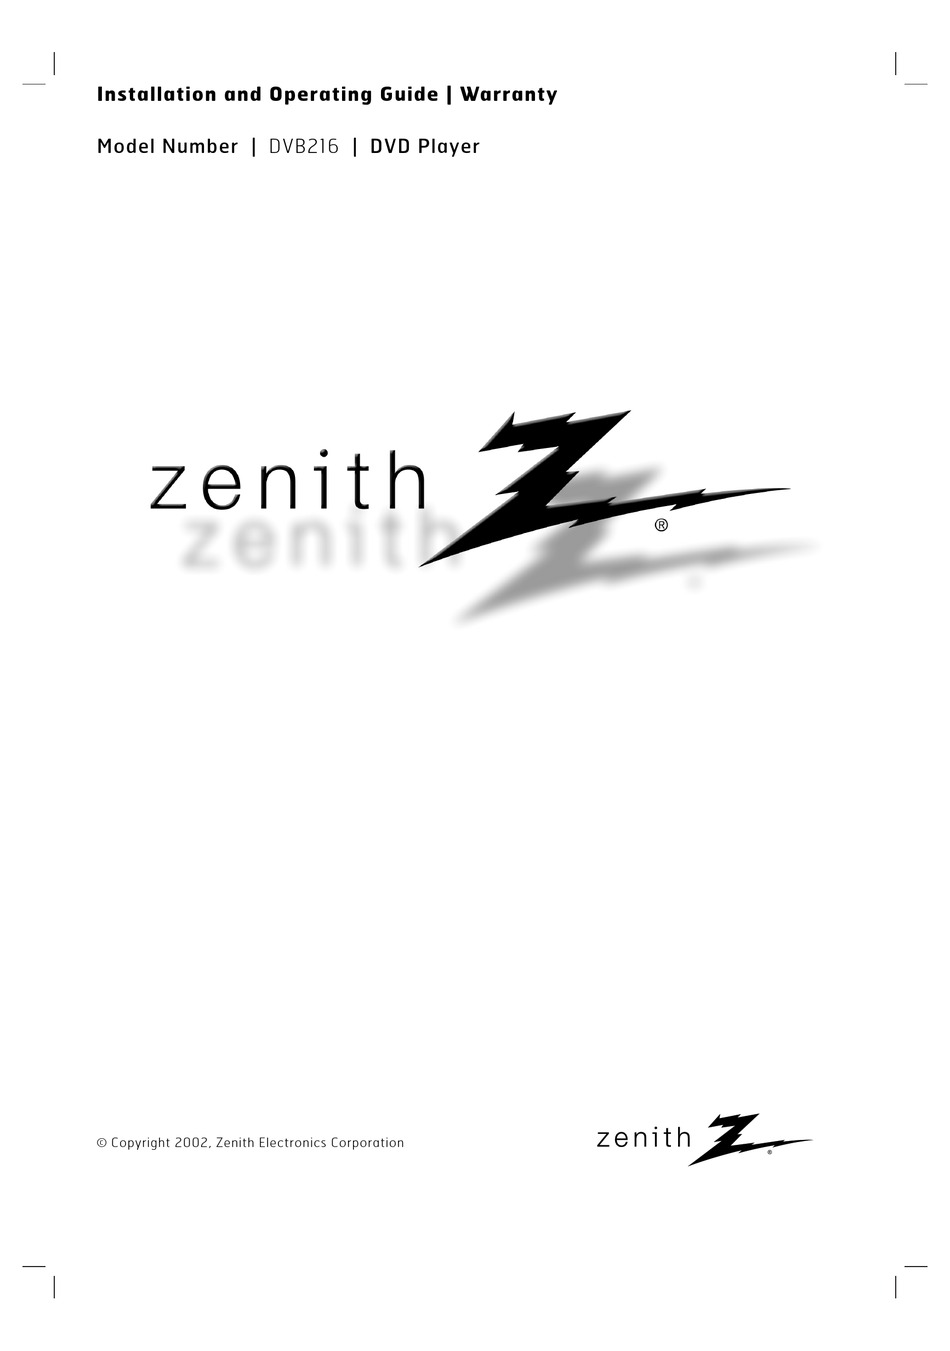 zenith dvd error